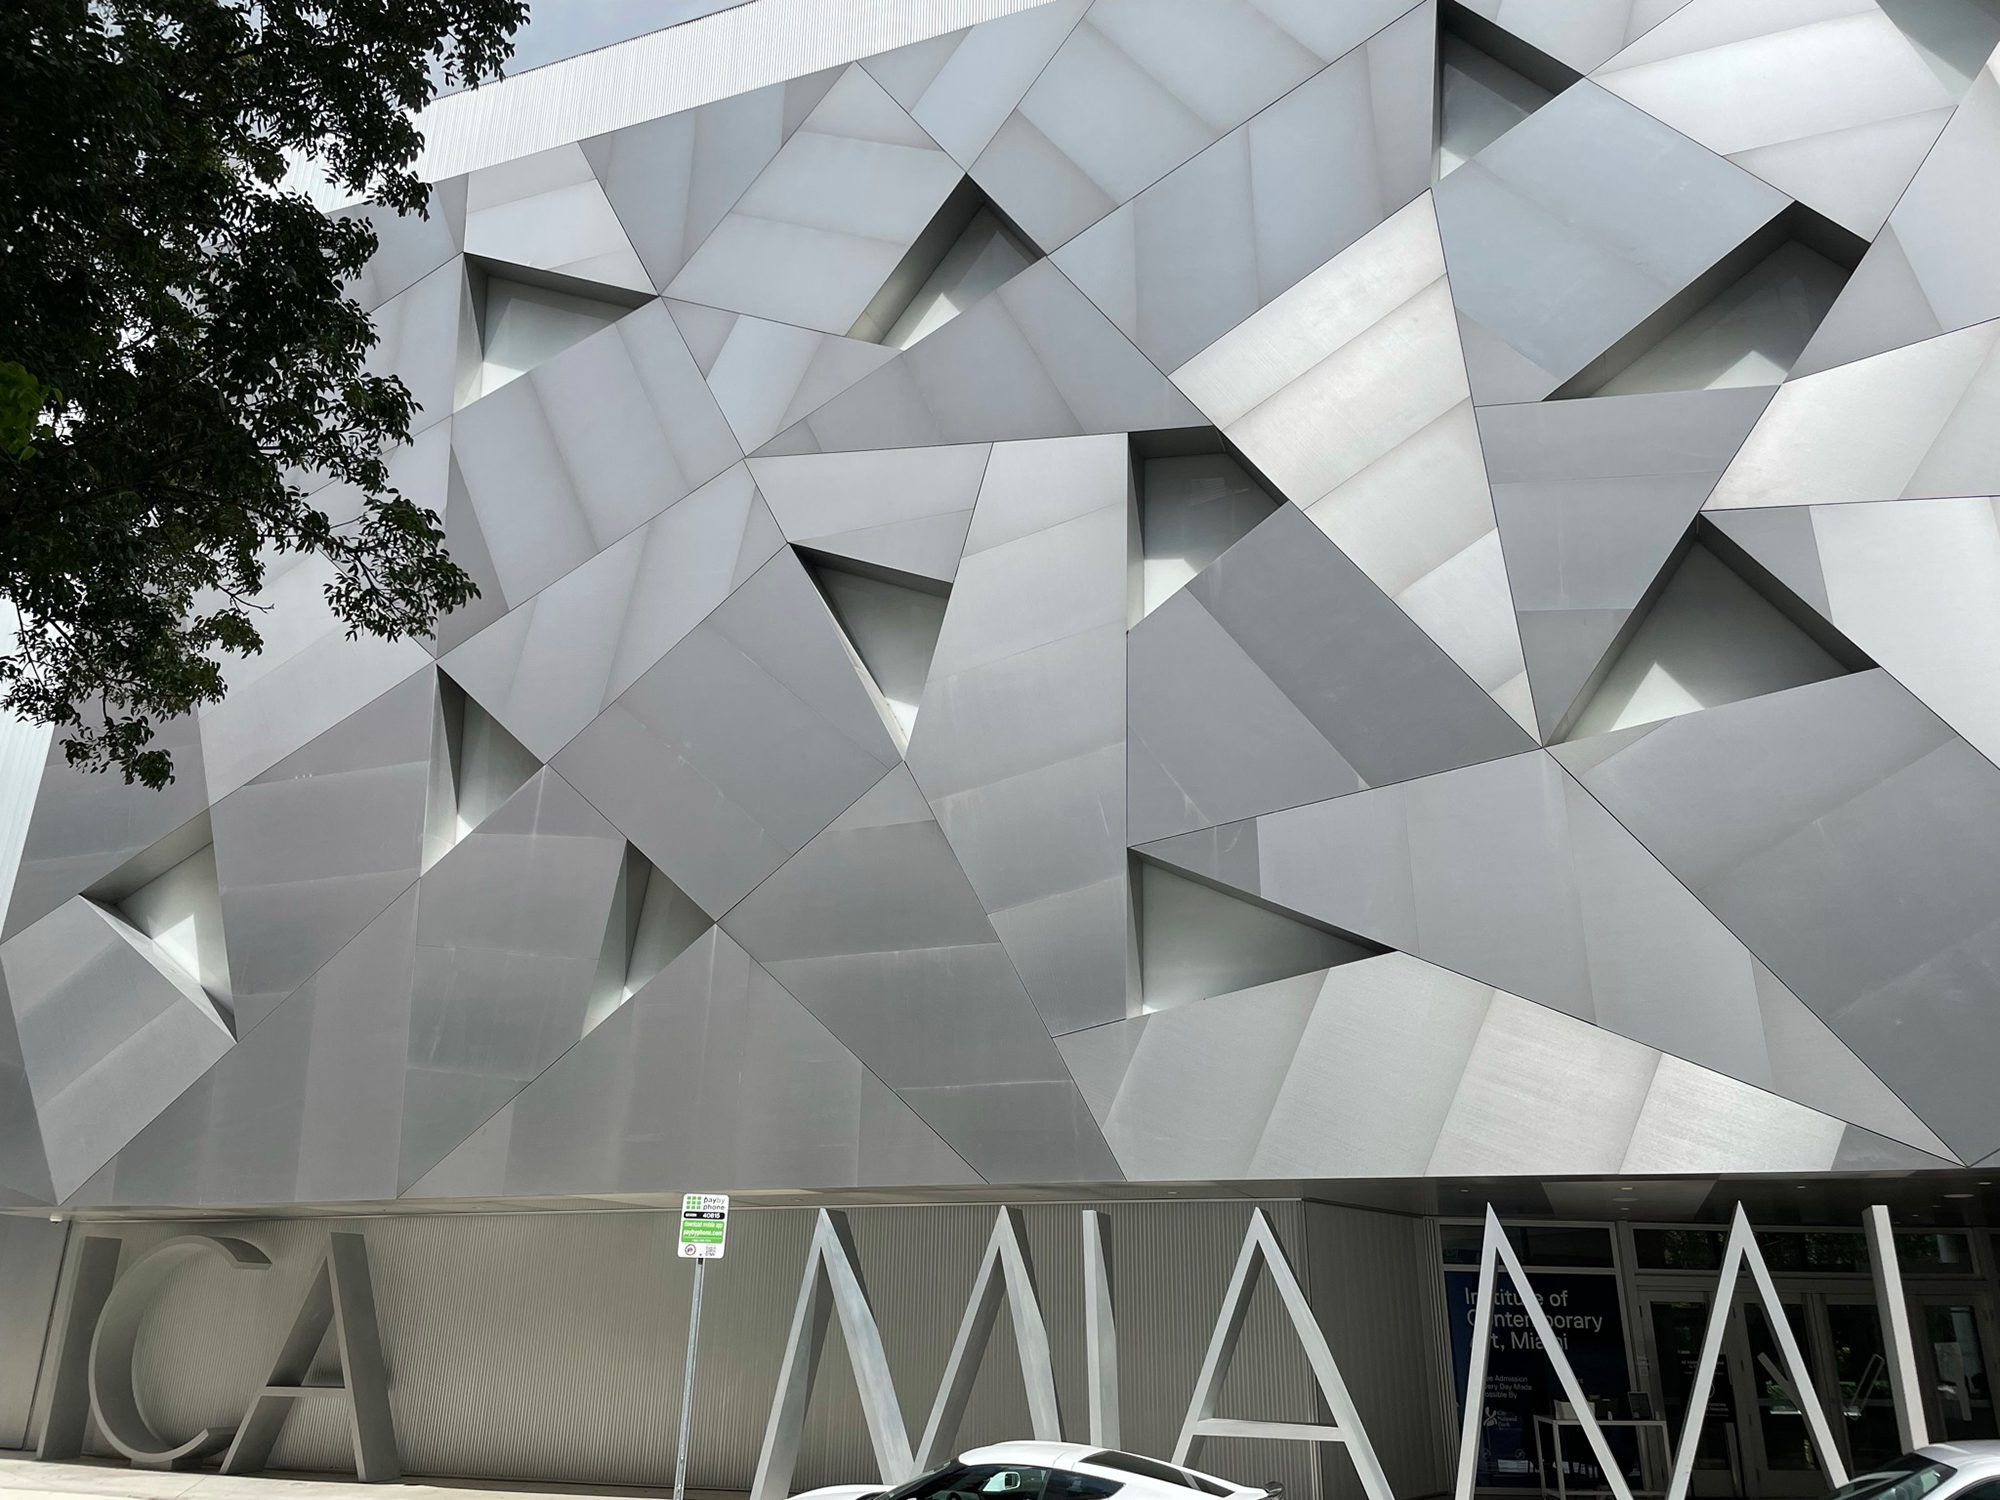 Miami Institute of Contemporary Art